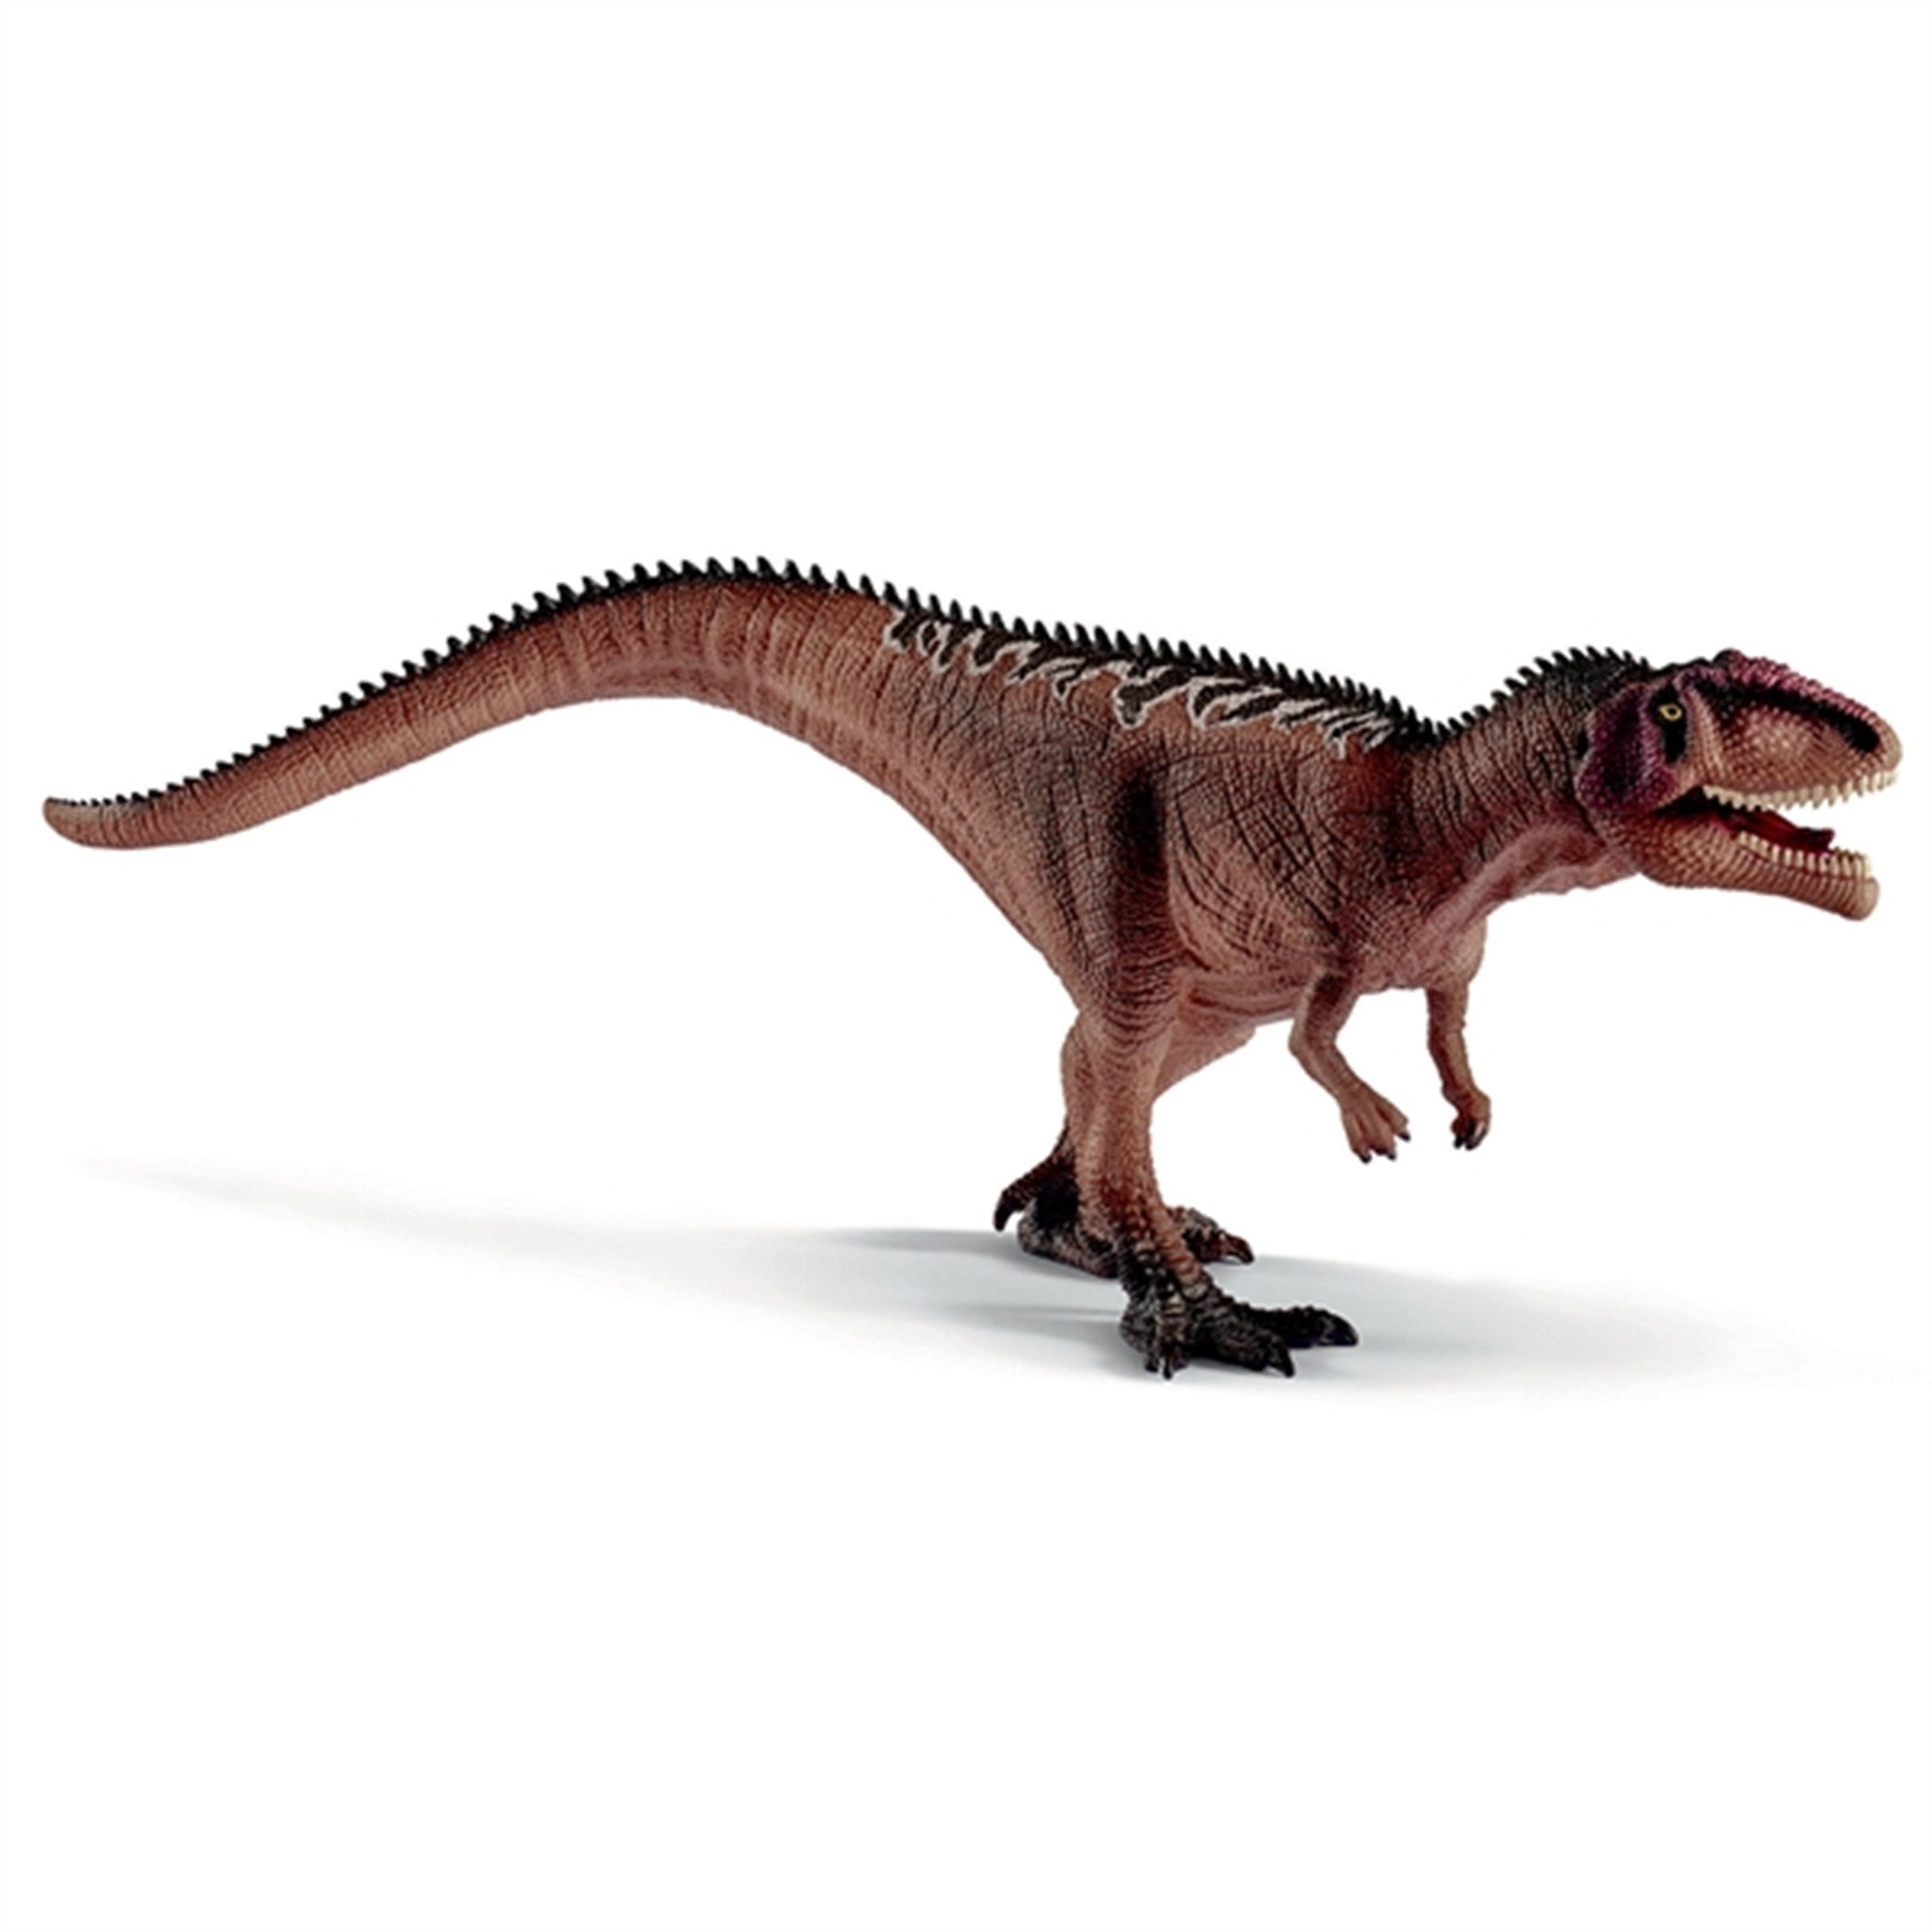 Schleich Dinosaurs Gigantosaurus Juvenile